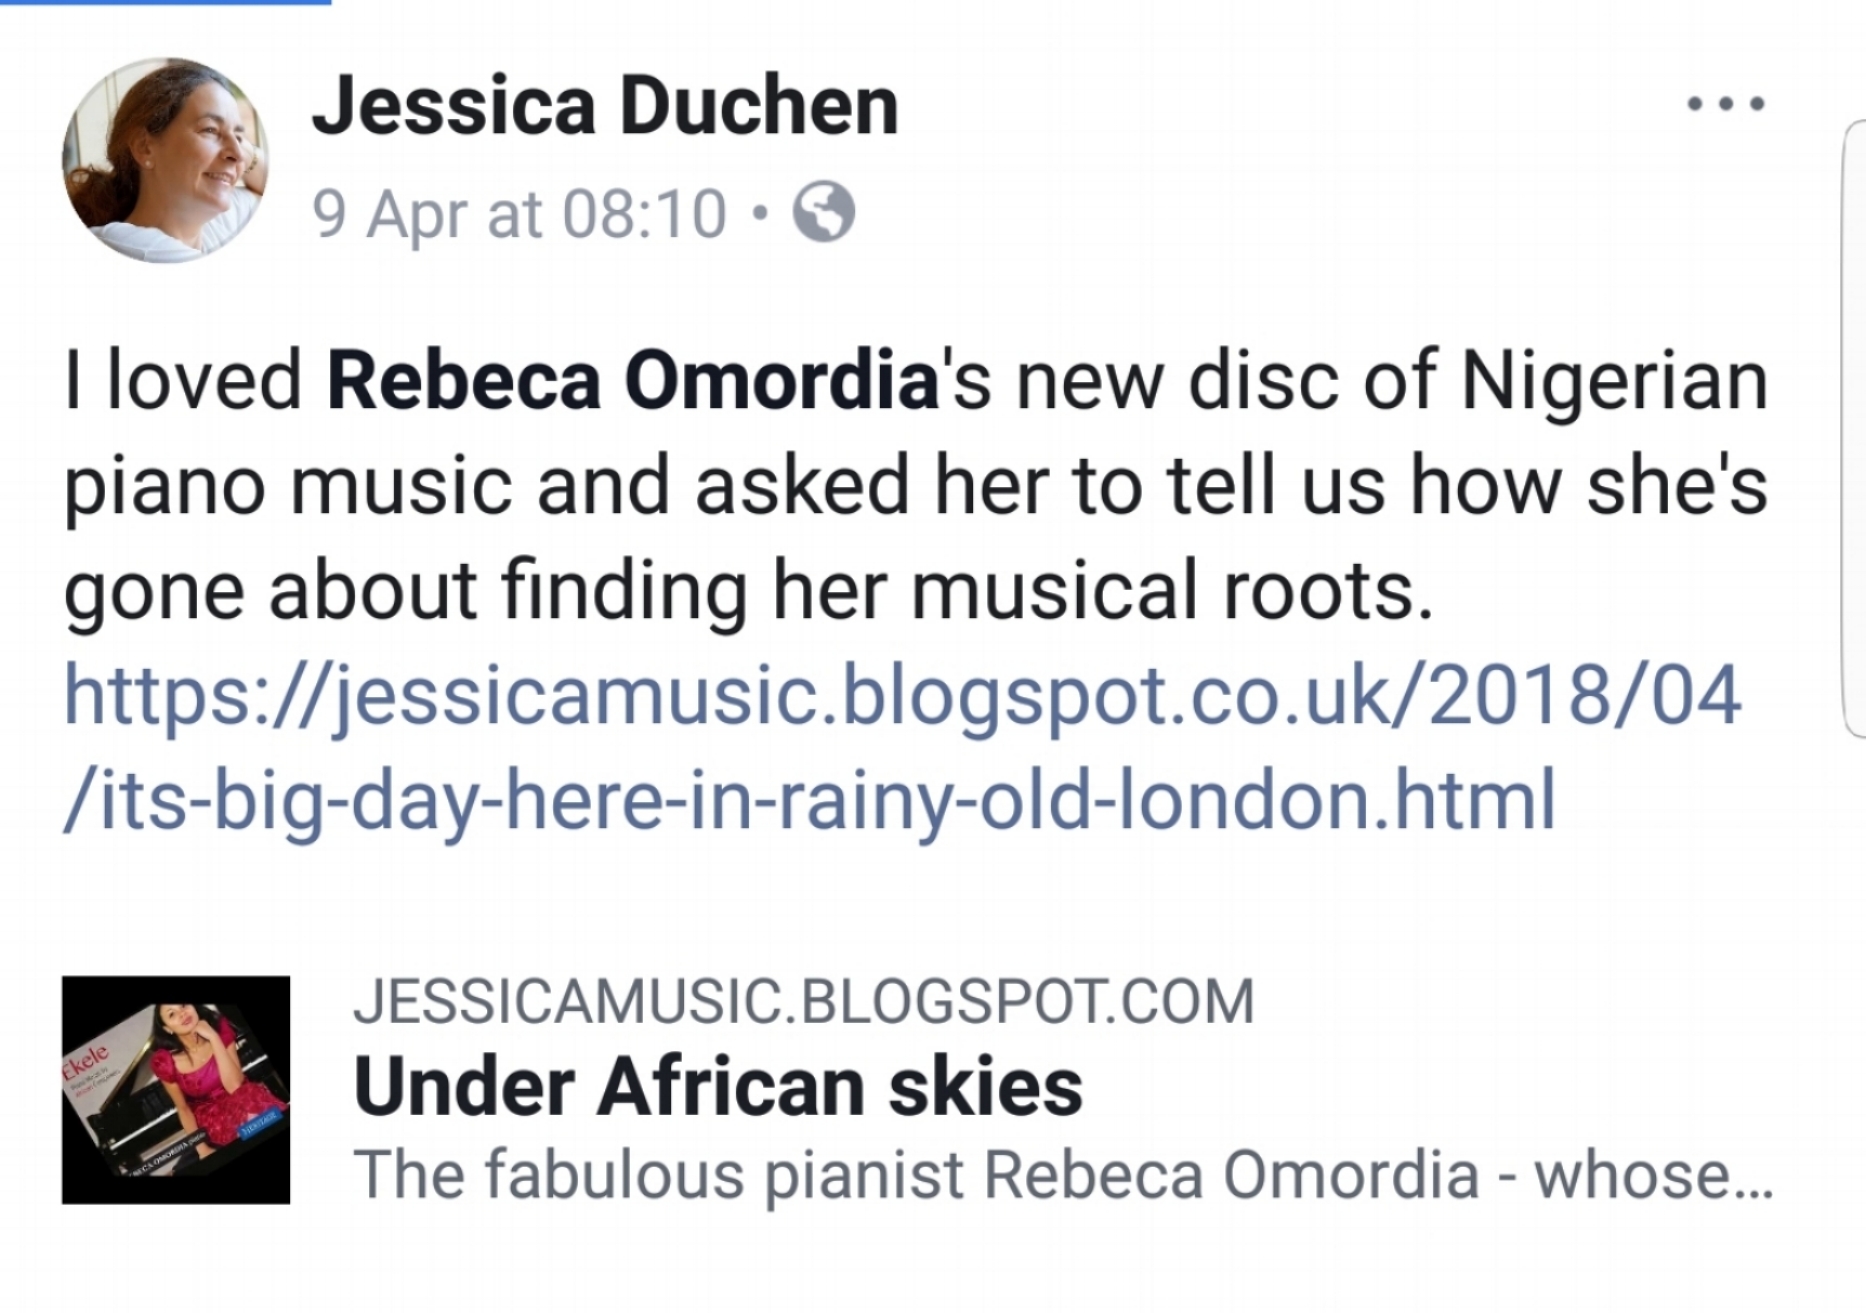 Jessica Duchen: Under African Skies